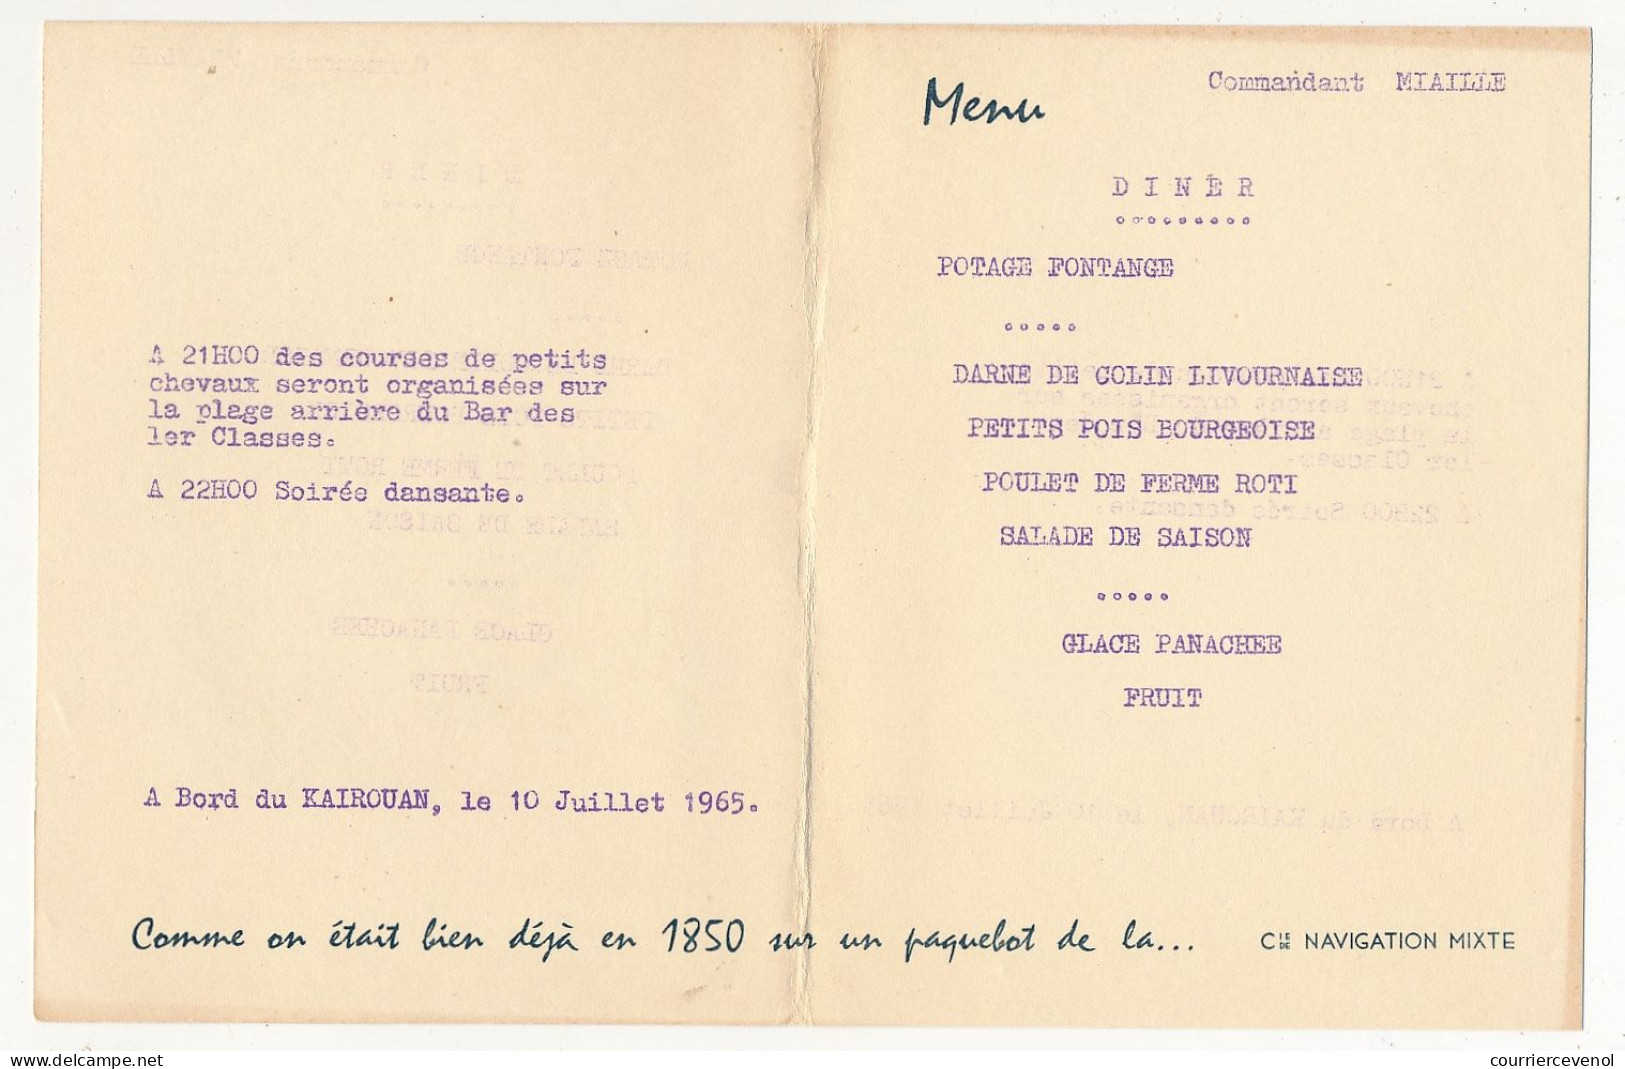 Menu Cie De Navigation Mixte - Commandant Miaille - KAIROUAN 10 Juillet 1965 - Dessin De Chapelet : La Salle à Manger - Menú